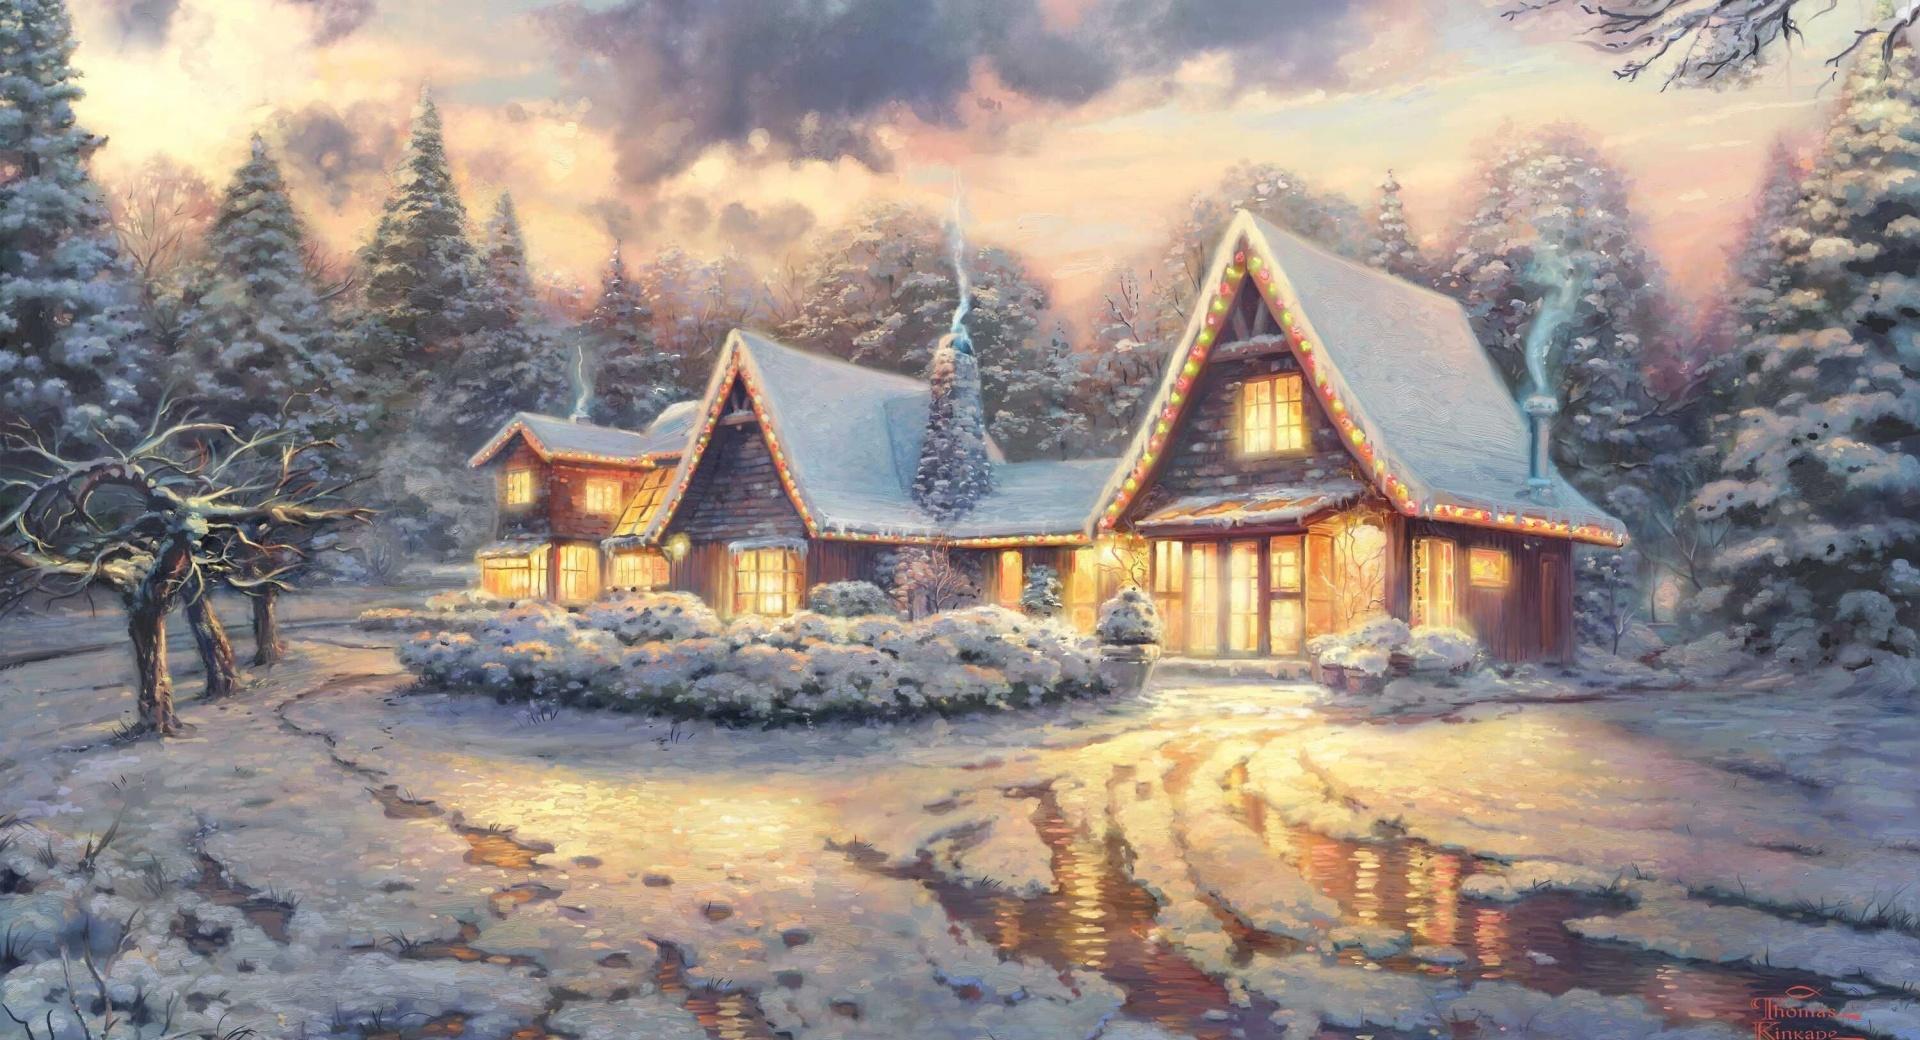 Christmas Lodge by Thomas Kinkade wallpapers HD quality